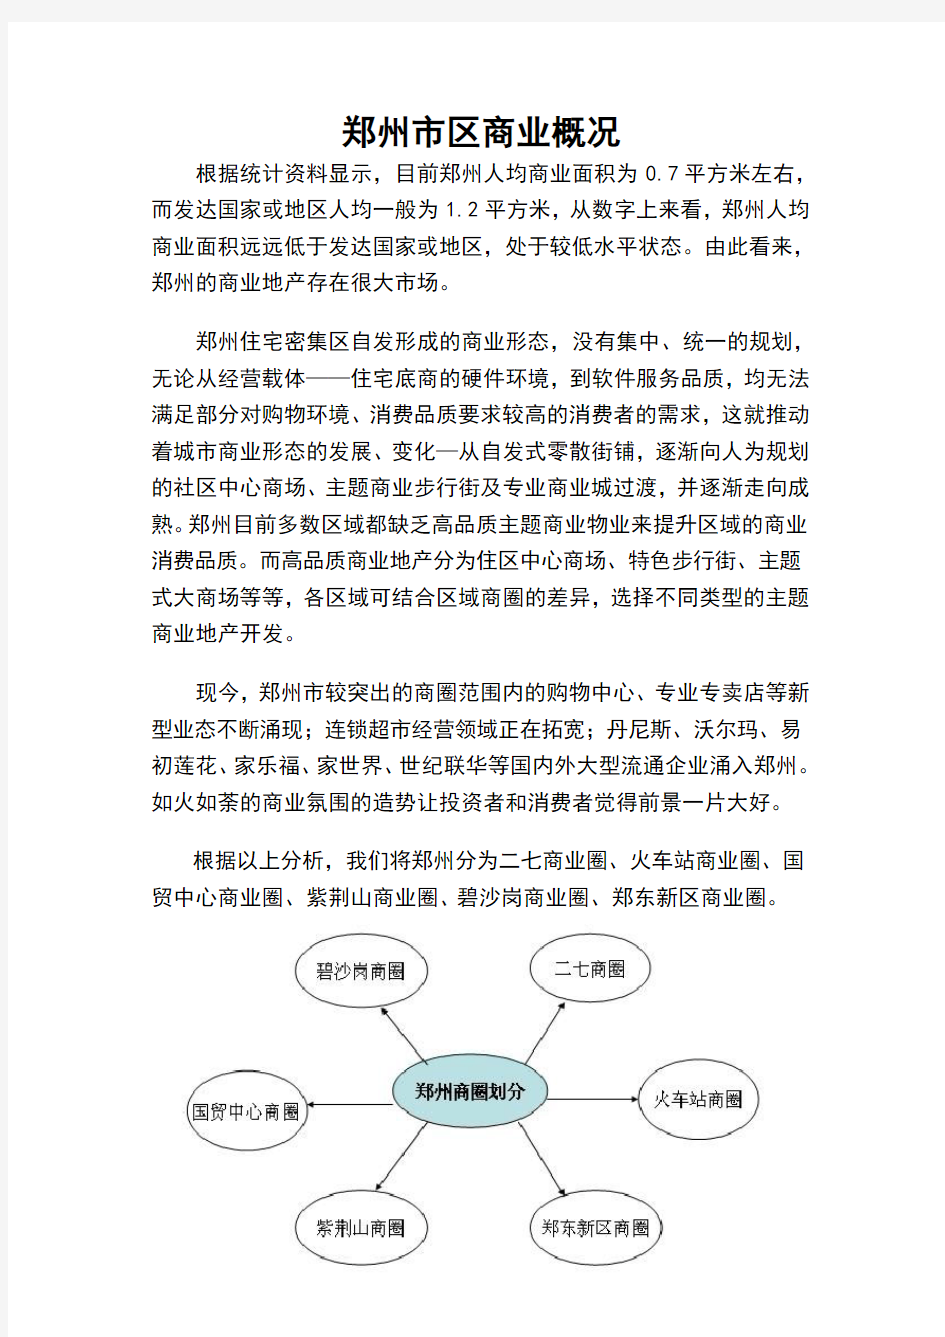 郑州市商圈调研分析报告0705